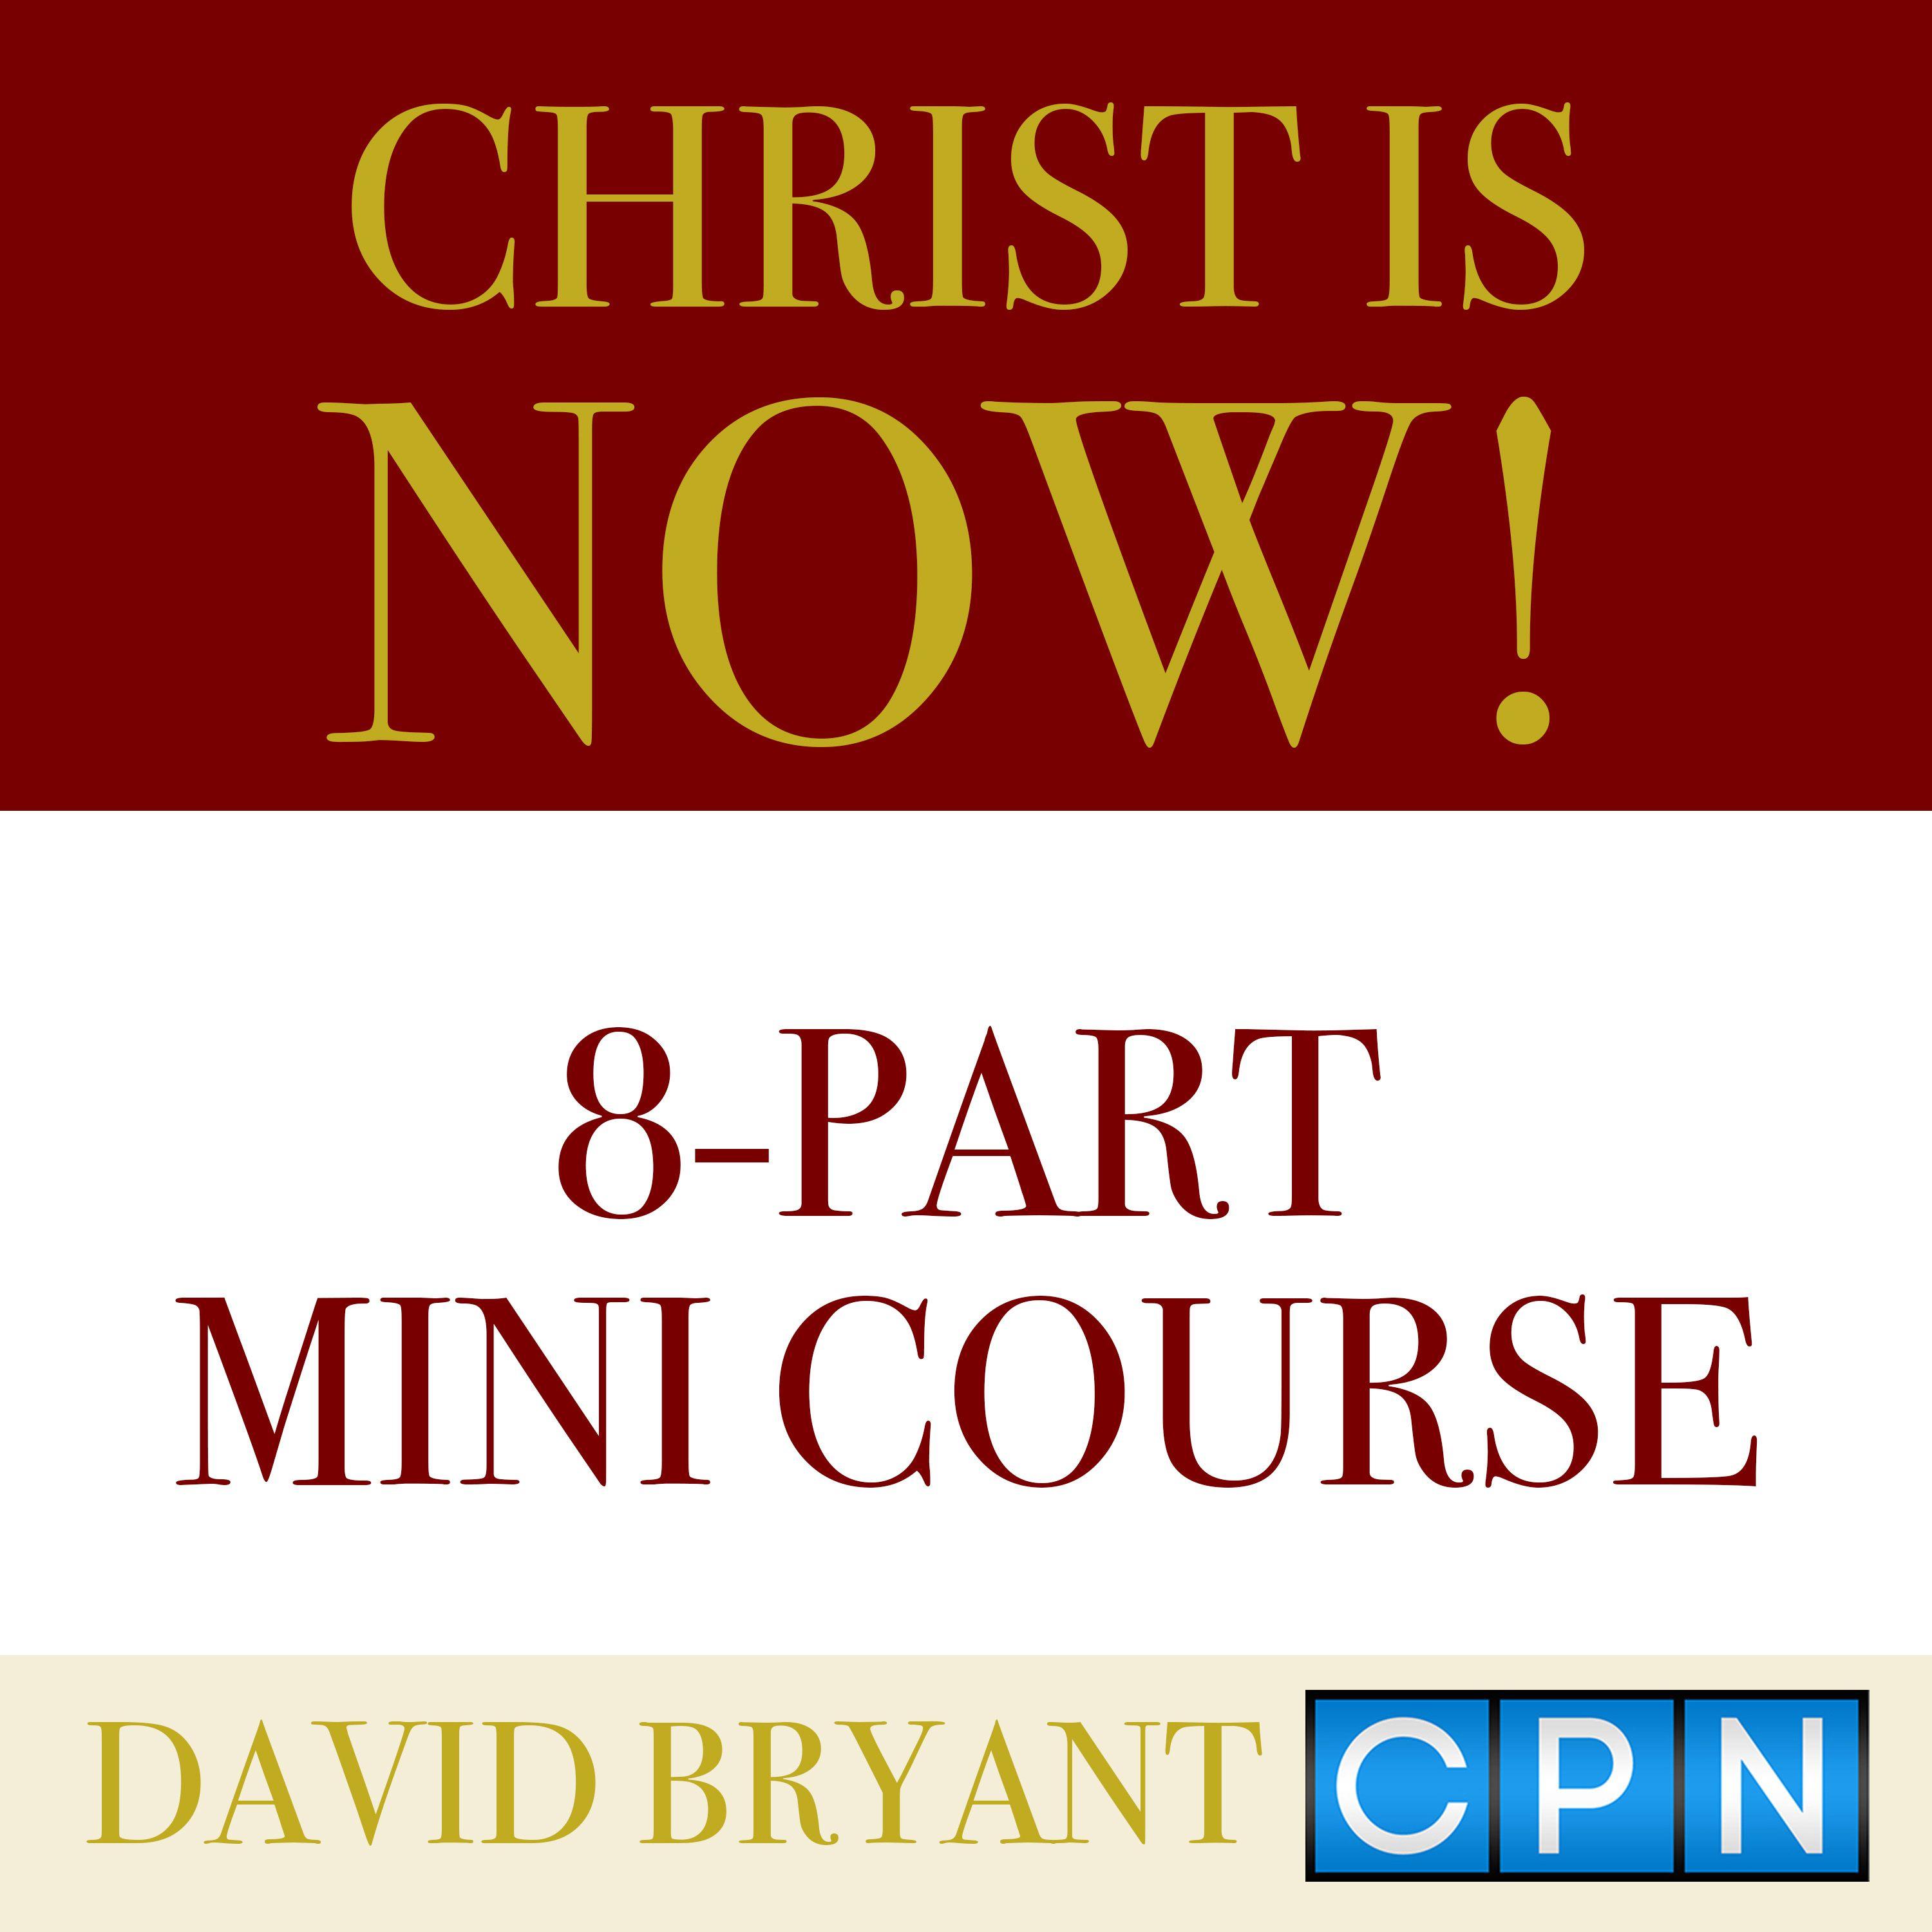 CPN Logo - David Bryant CPN Logo